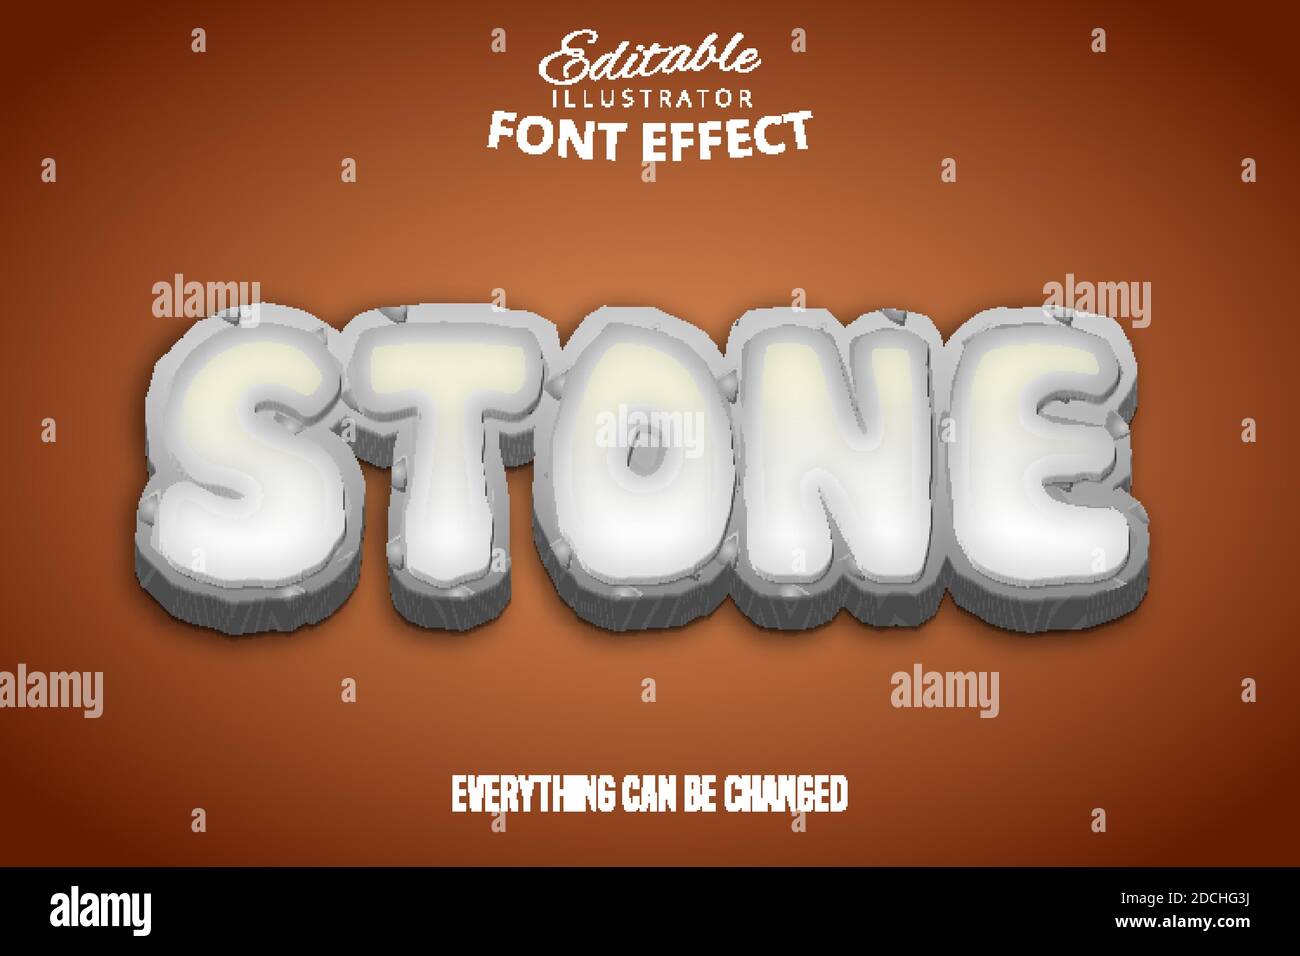 Text stone. Шрифт камень. Stone Effect шрифт. Каменный текст. Эффекты для шрифтов.